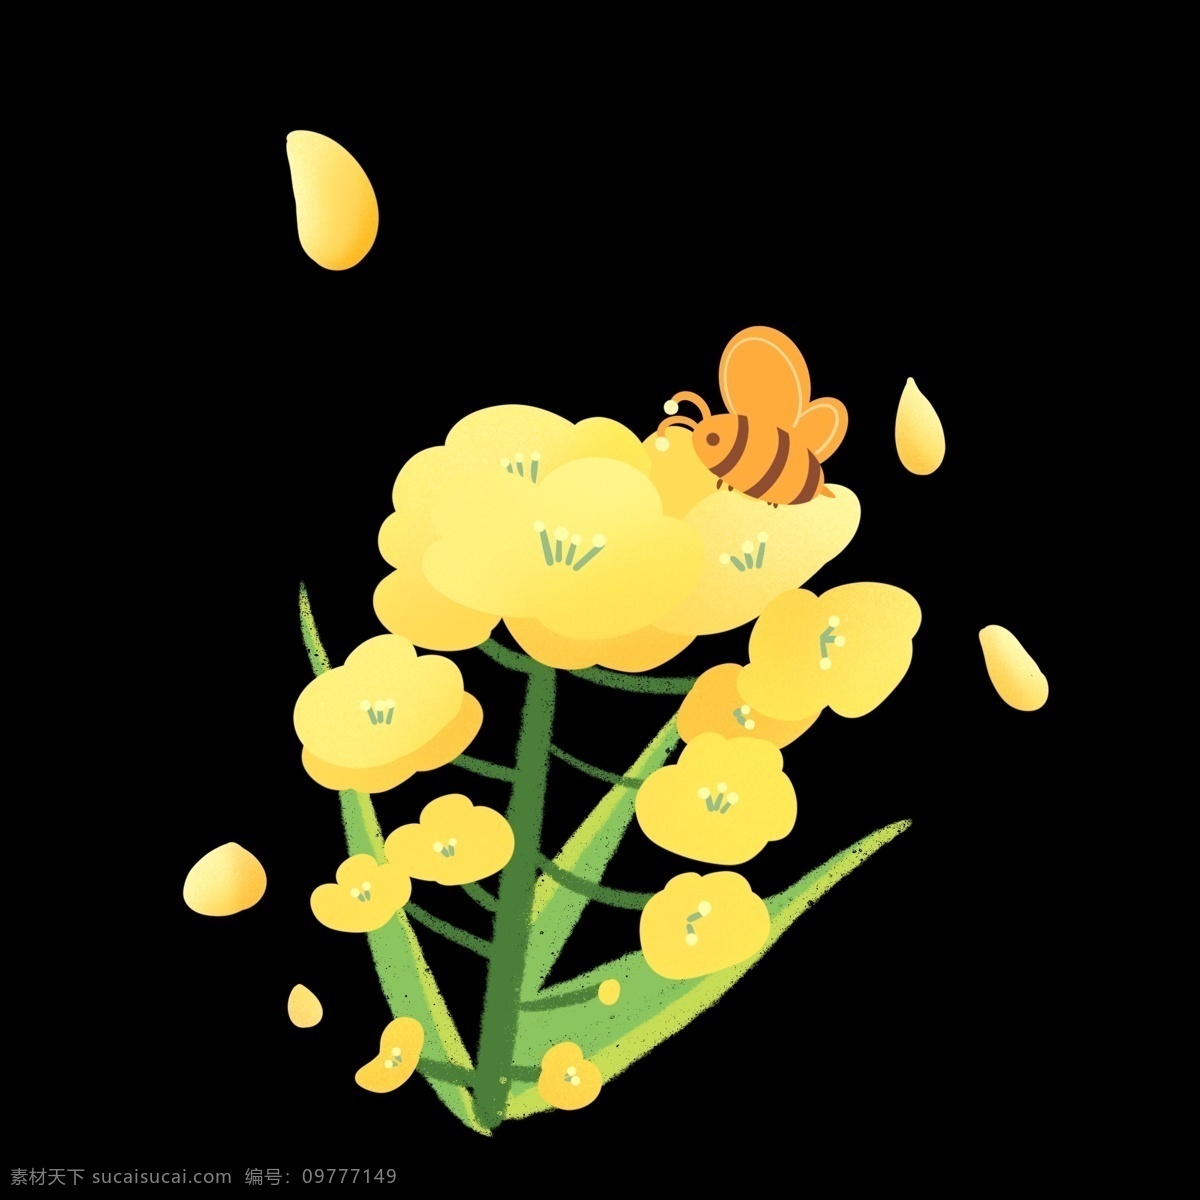 采 蜜 油菜花 装饰 插图 金灿灿 谐音 才华 勤劳的蜜蜂 春暖花开 金色海洋 黄色油菜花